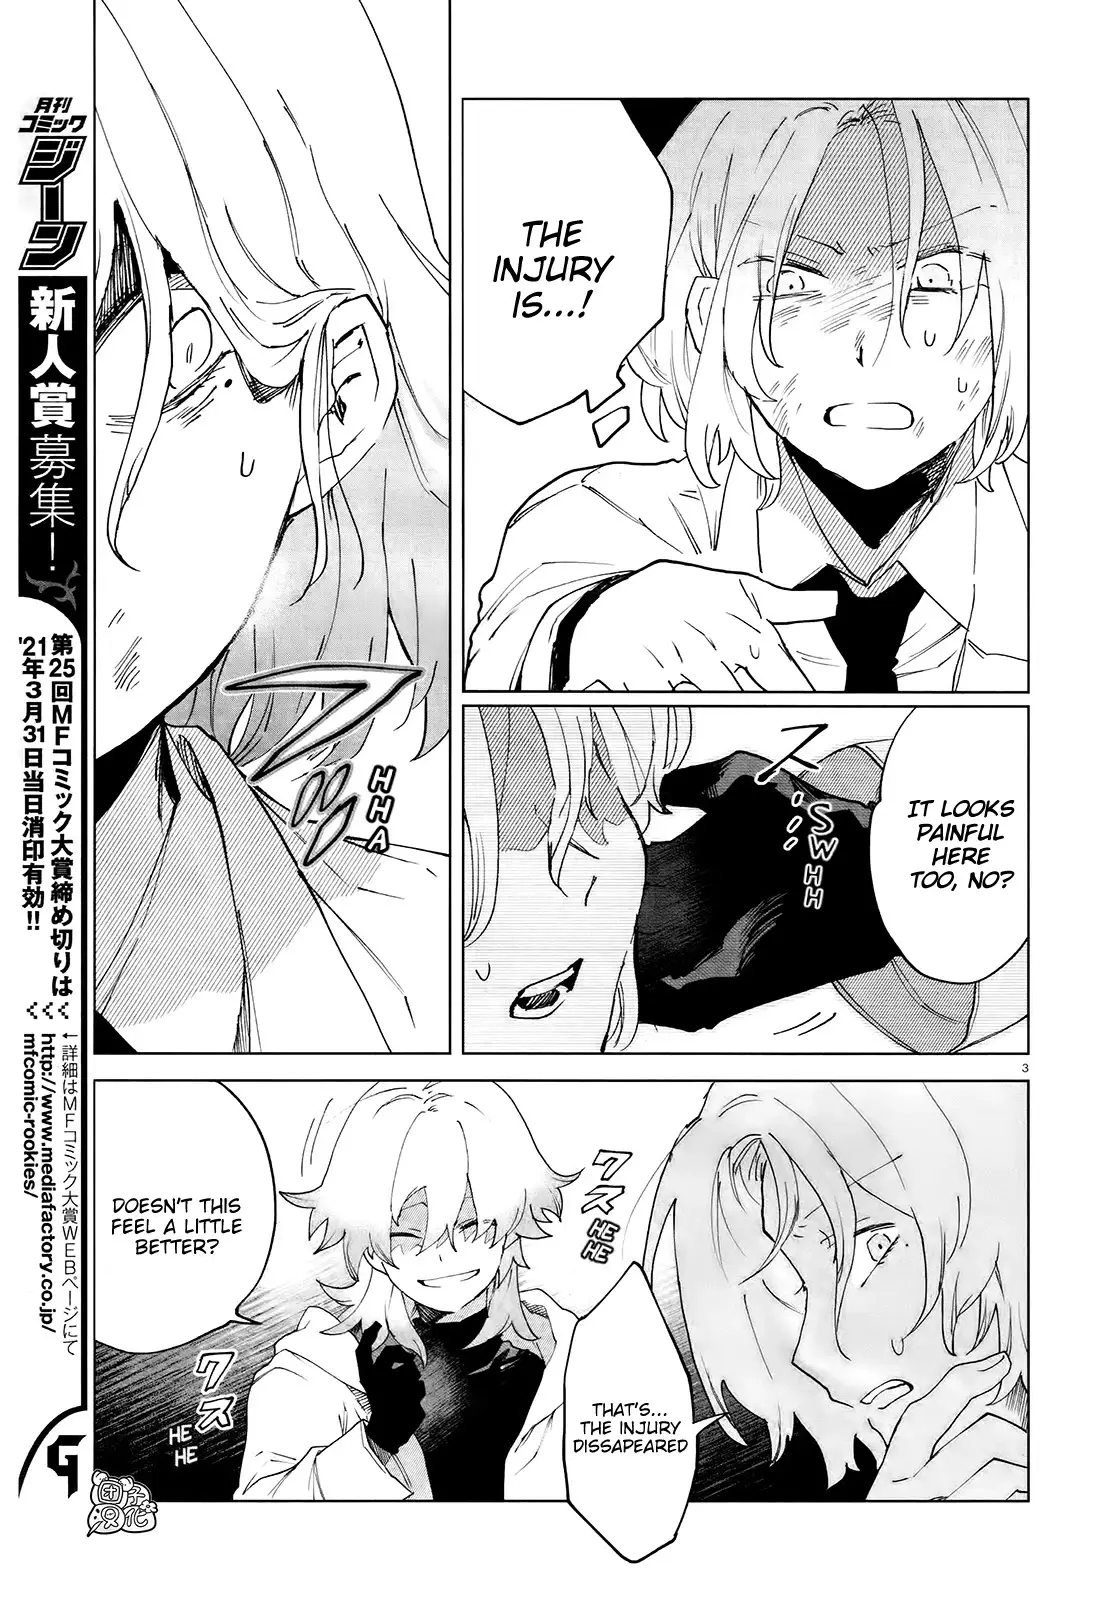 Kara No Kioku - 7 page 3